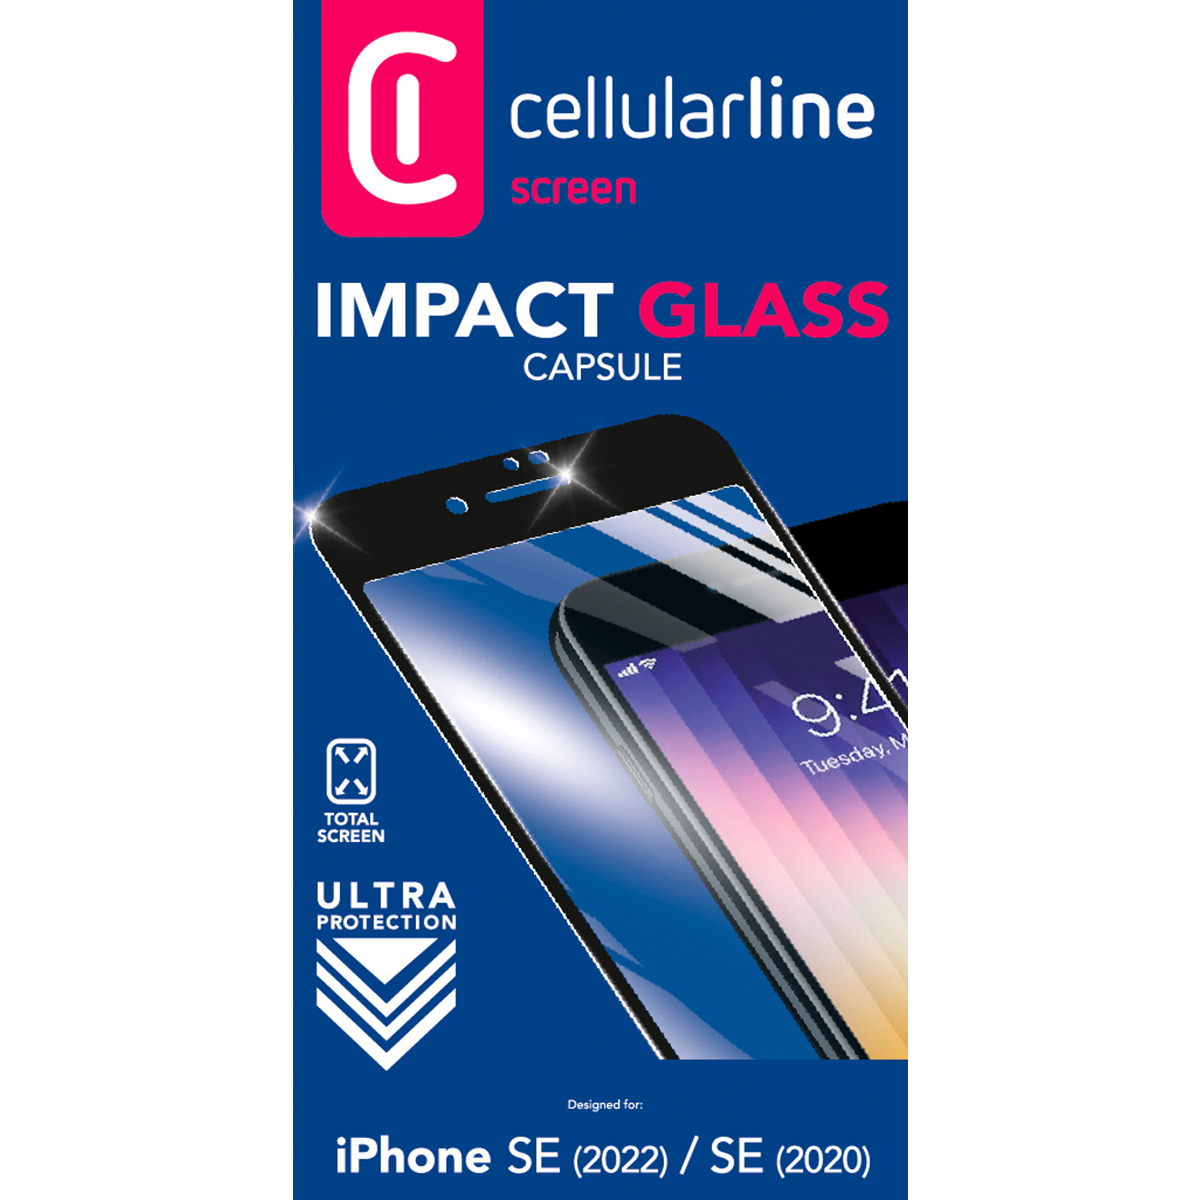 Schutzglas IMPACT GLASS CAPSULE für Apple iPhone SE 2020/2022